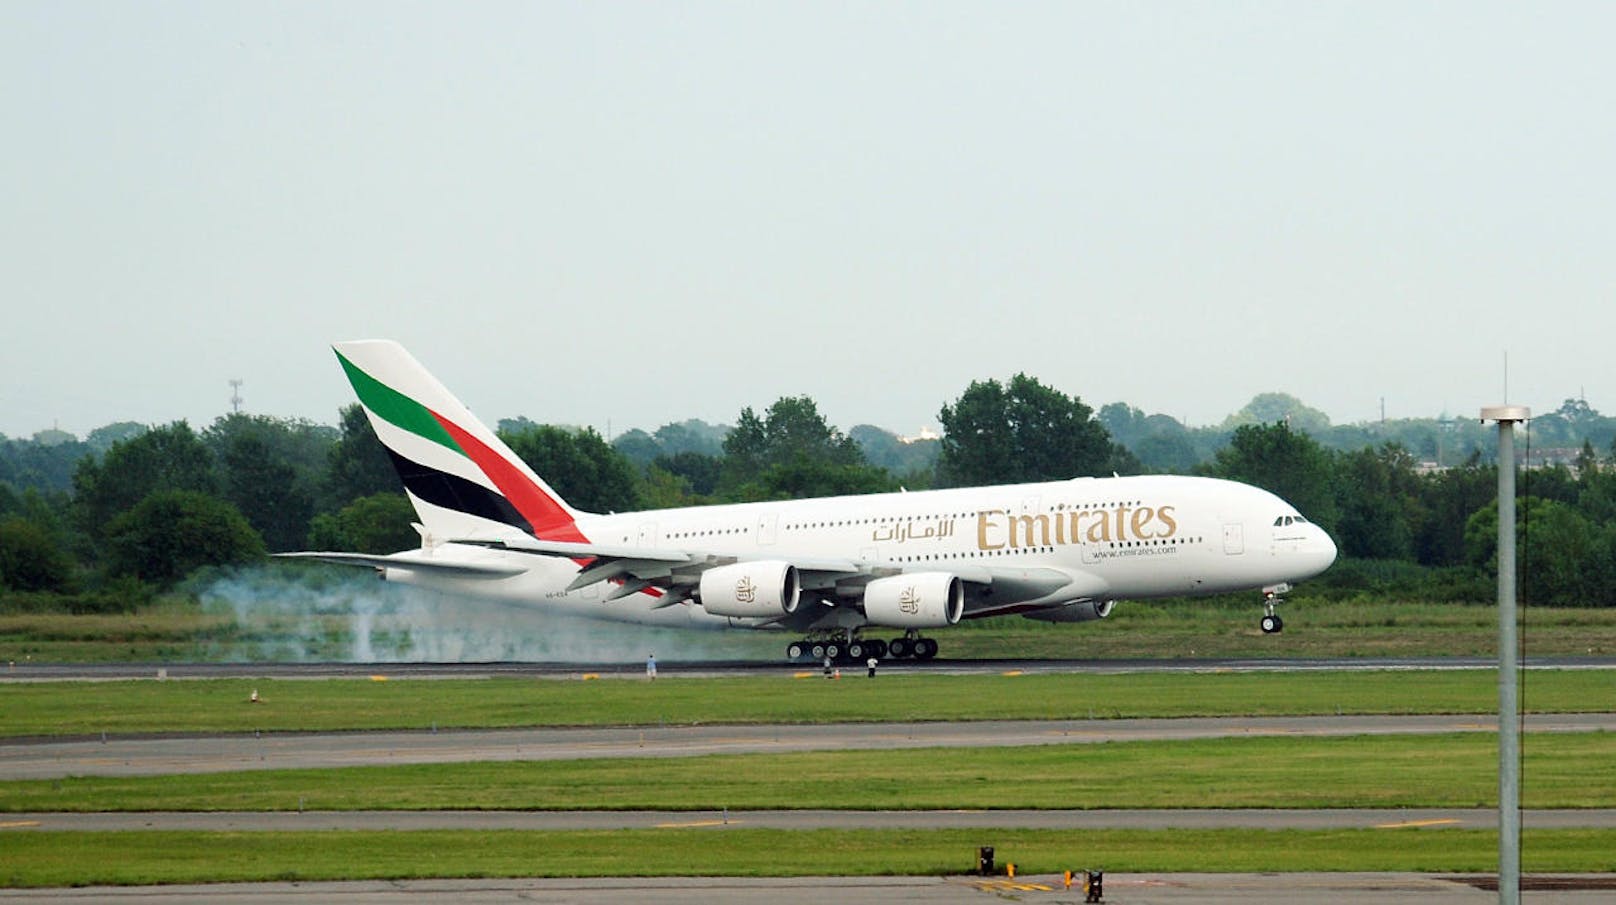 Turbulent: Die Crew der "Emirates" alarmierte die Polizei - weil sich die Britin an Bord angeblich so verdächtig die Nase geputzt hatte.